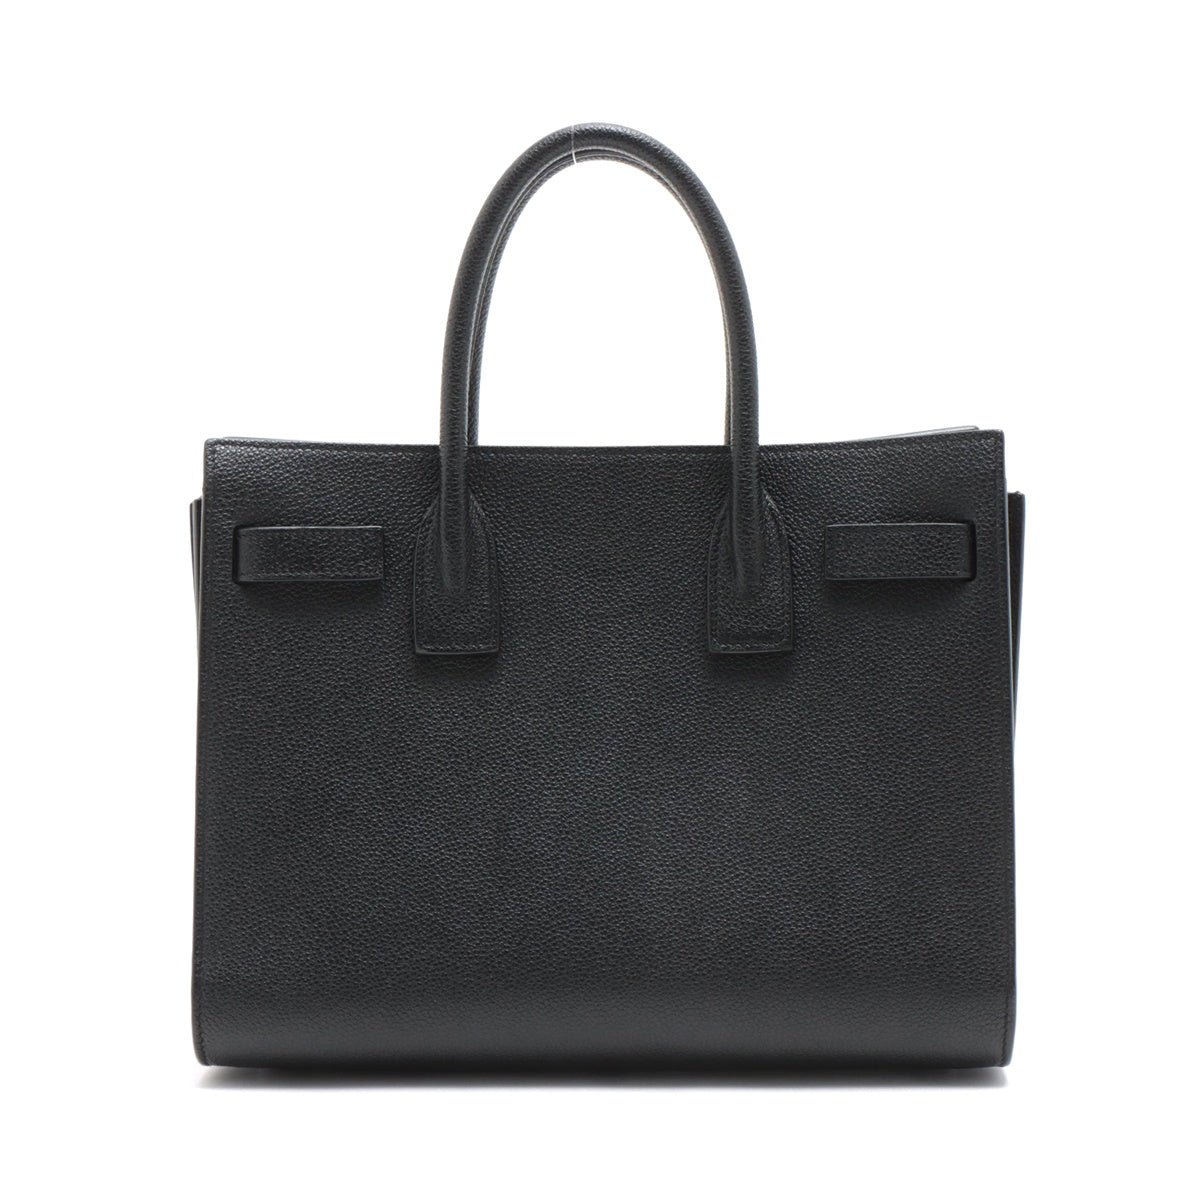 Saint Laurent Paris Leather 2 Way Handbag Black